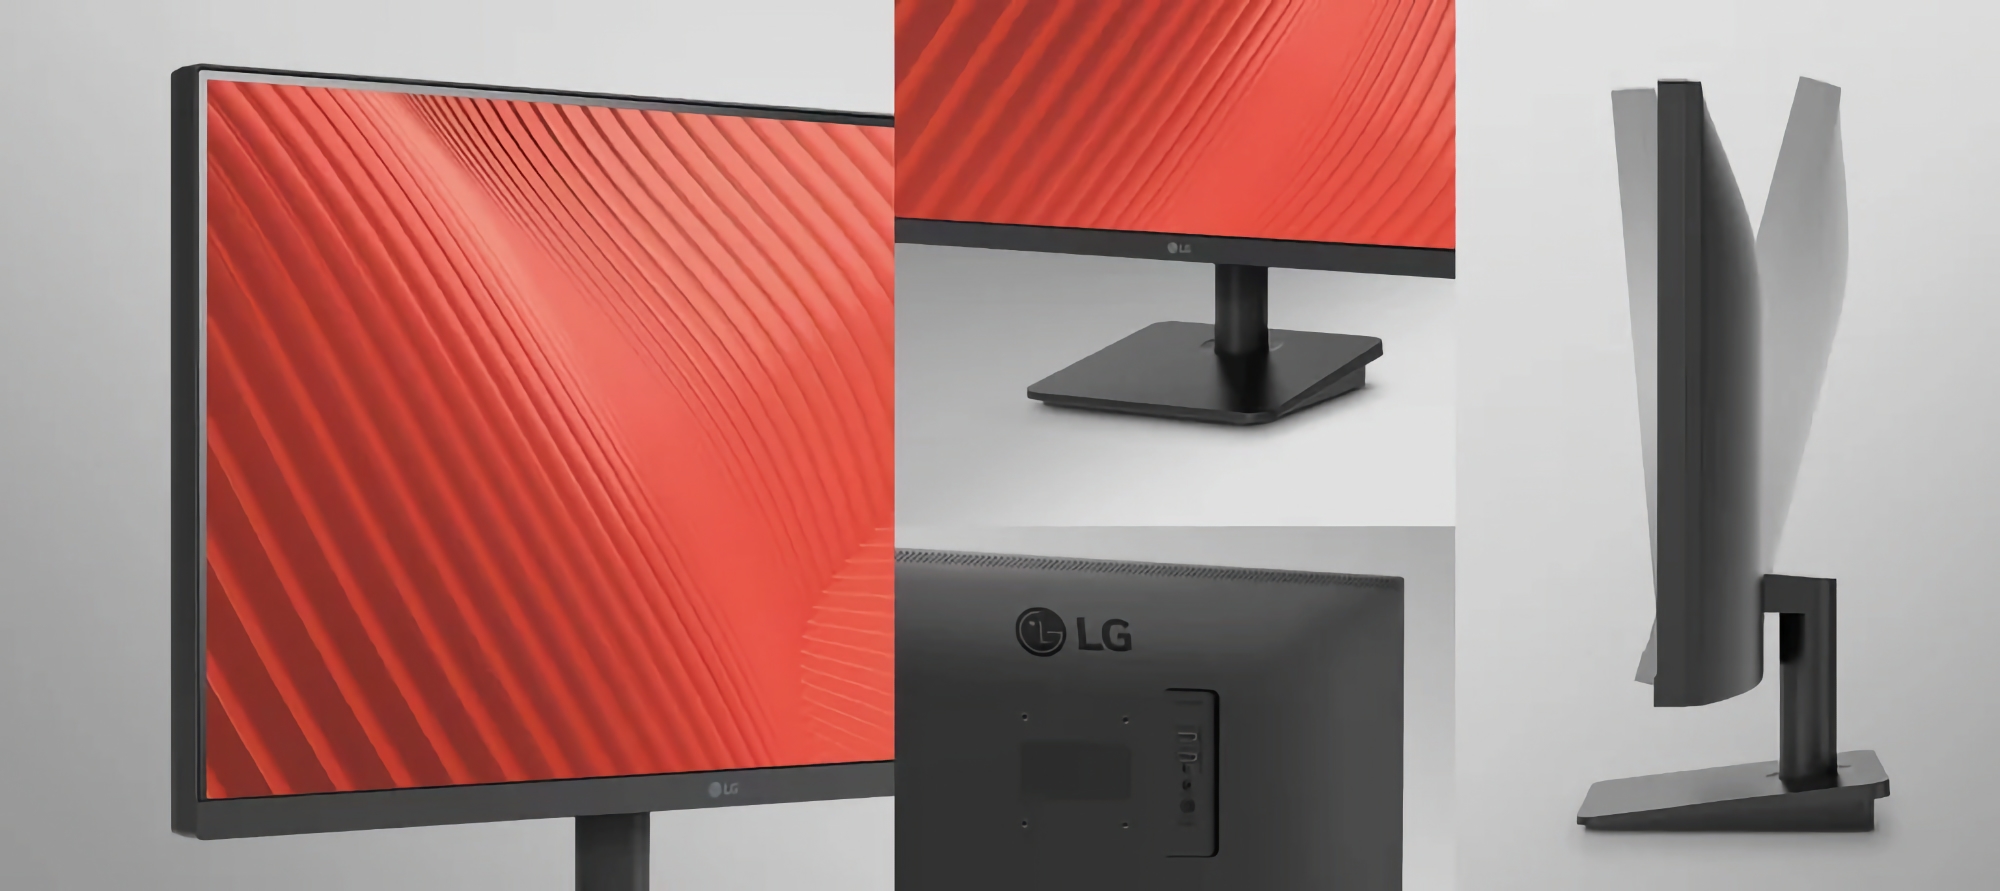 LG a présenté le 25MS500 : un moniteur avec matrice IPS, résolution 1080p et support 100Hz pour 87 dollars.